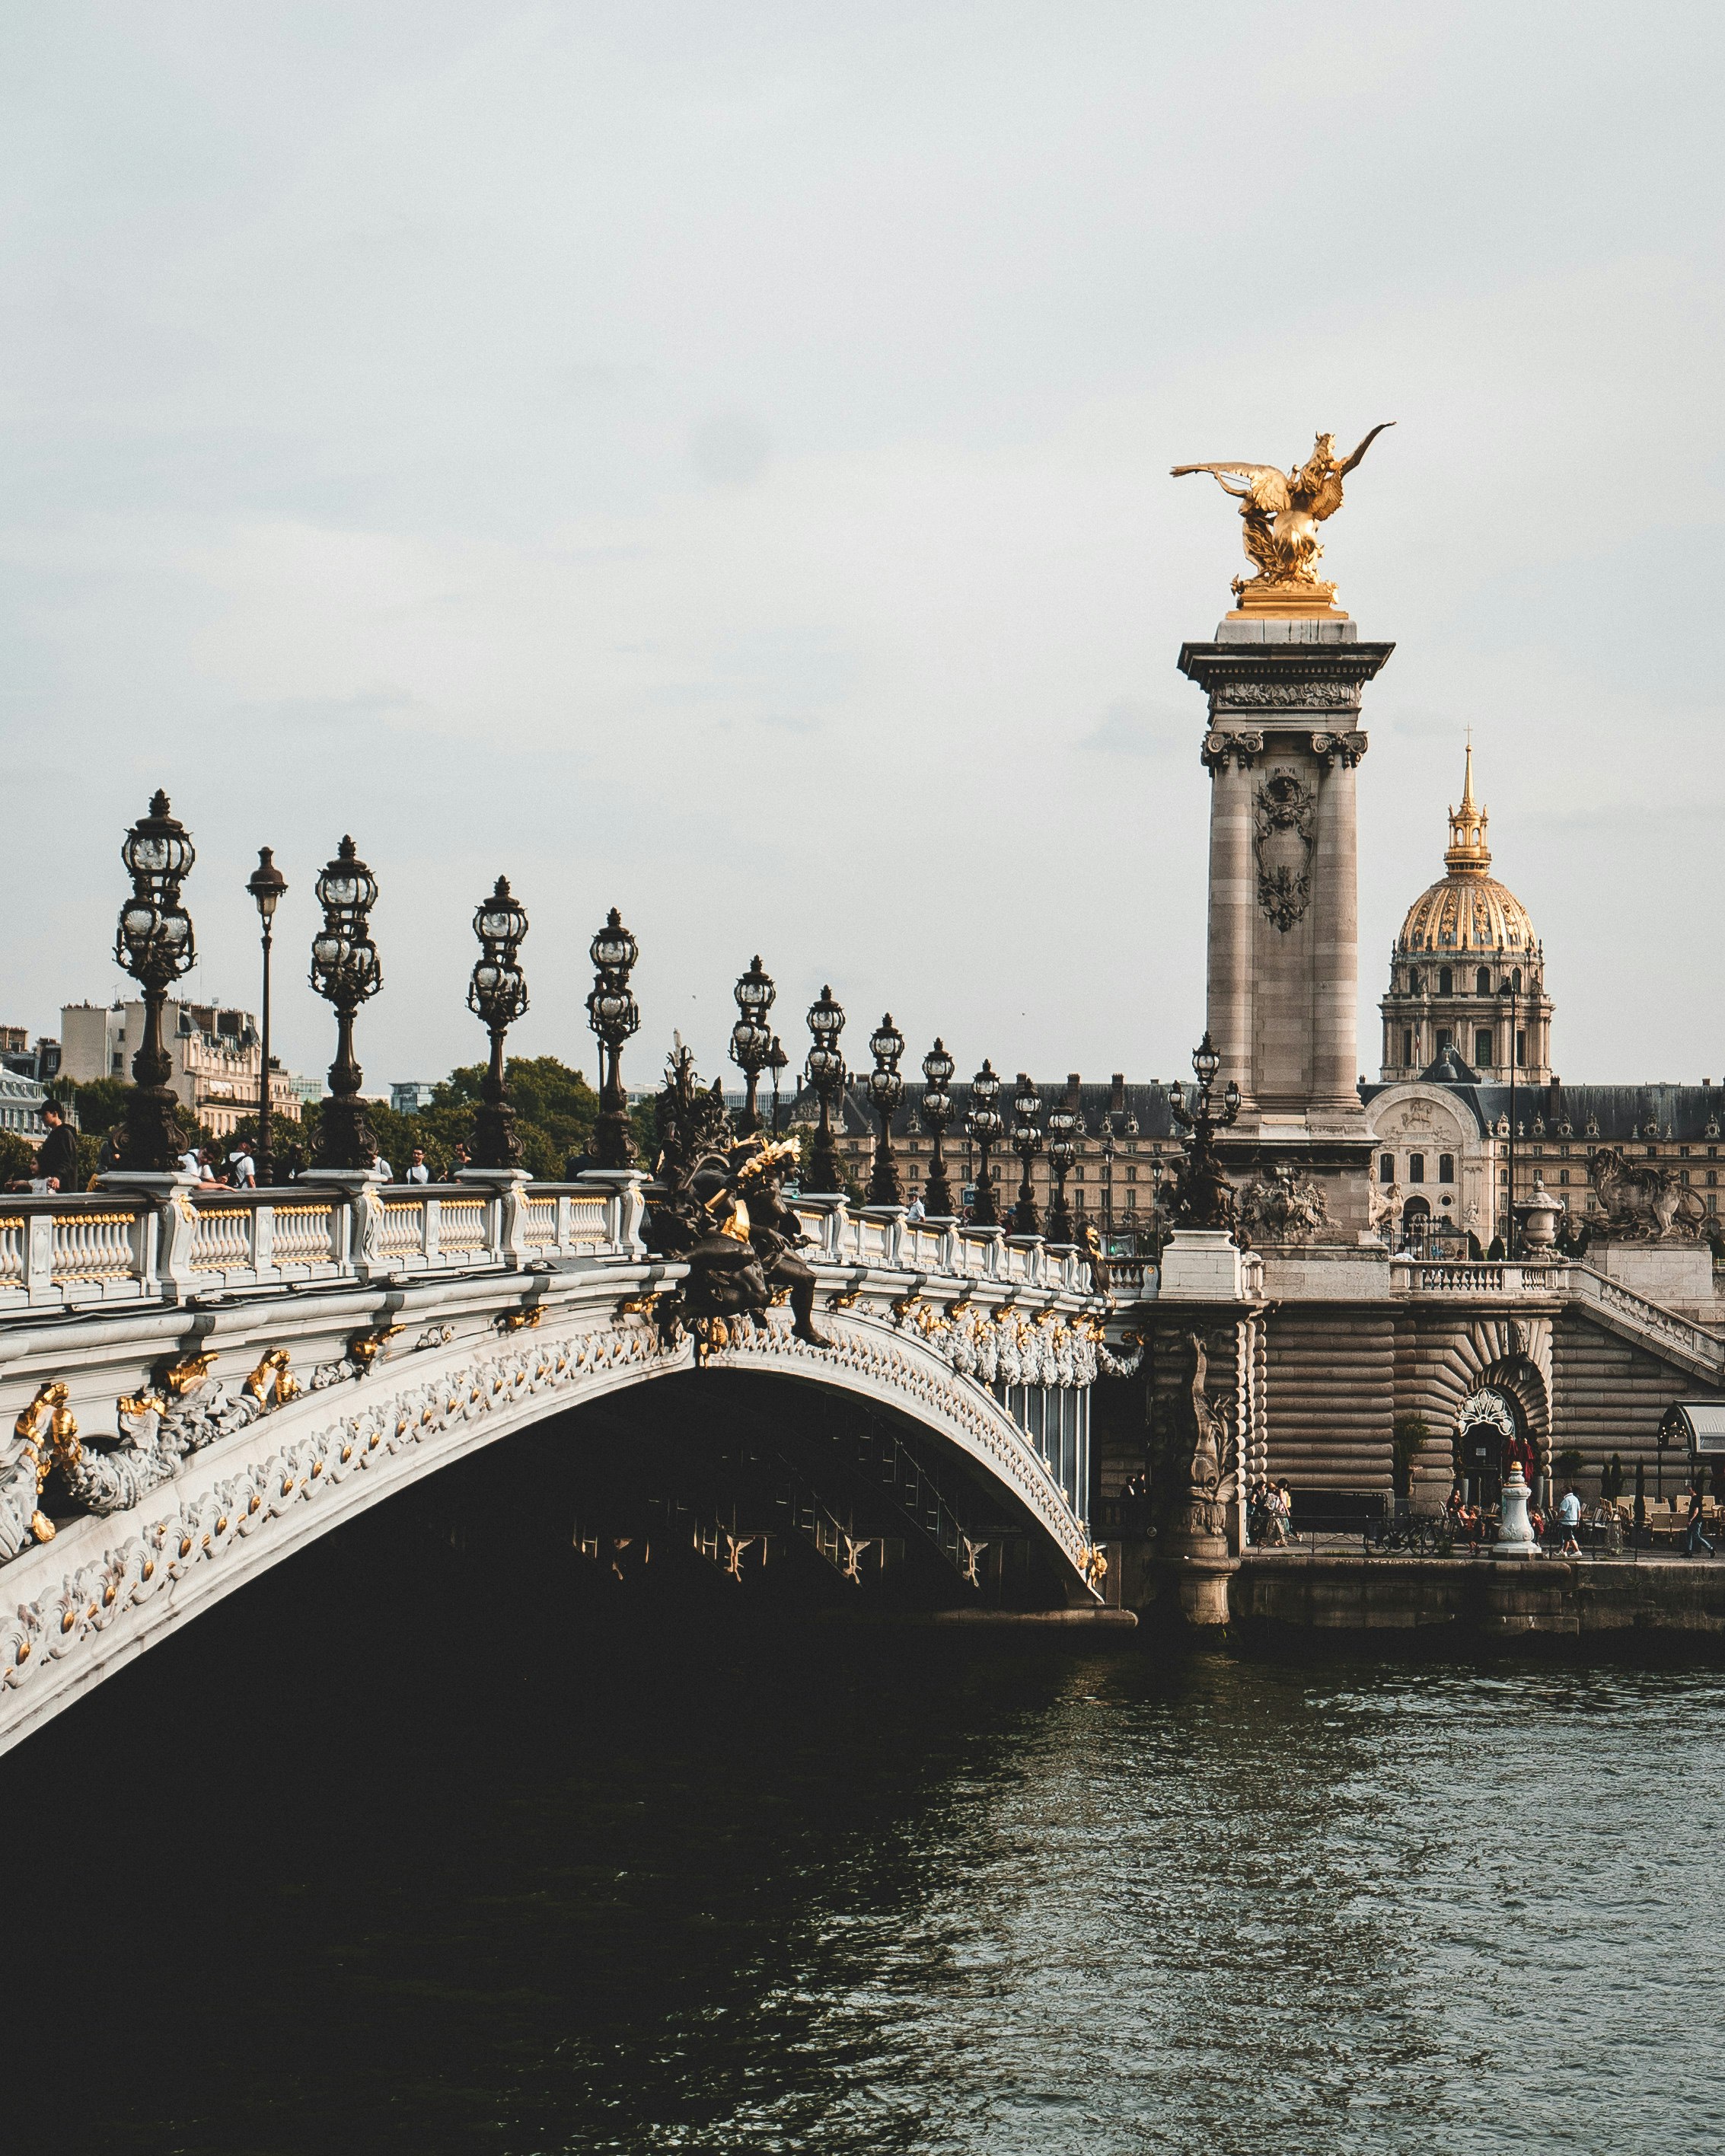 Pont du Carrousel, one of the most beautiful bridges in Paris :) 
Paris Picdump #2